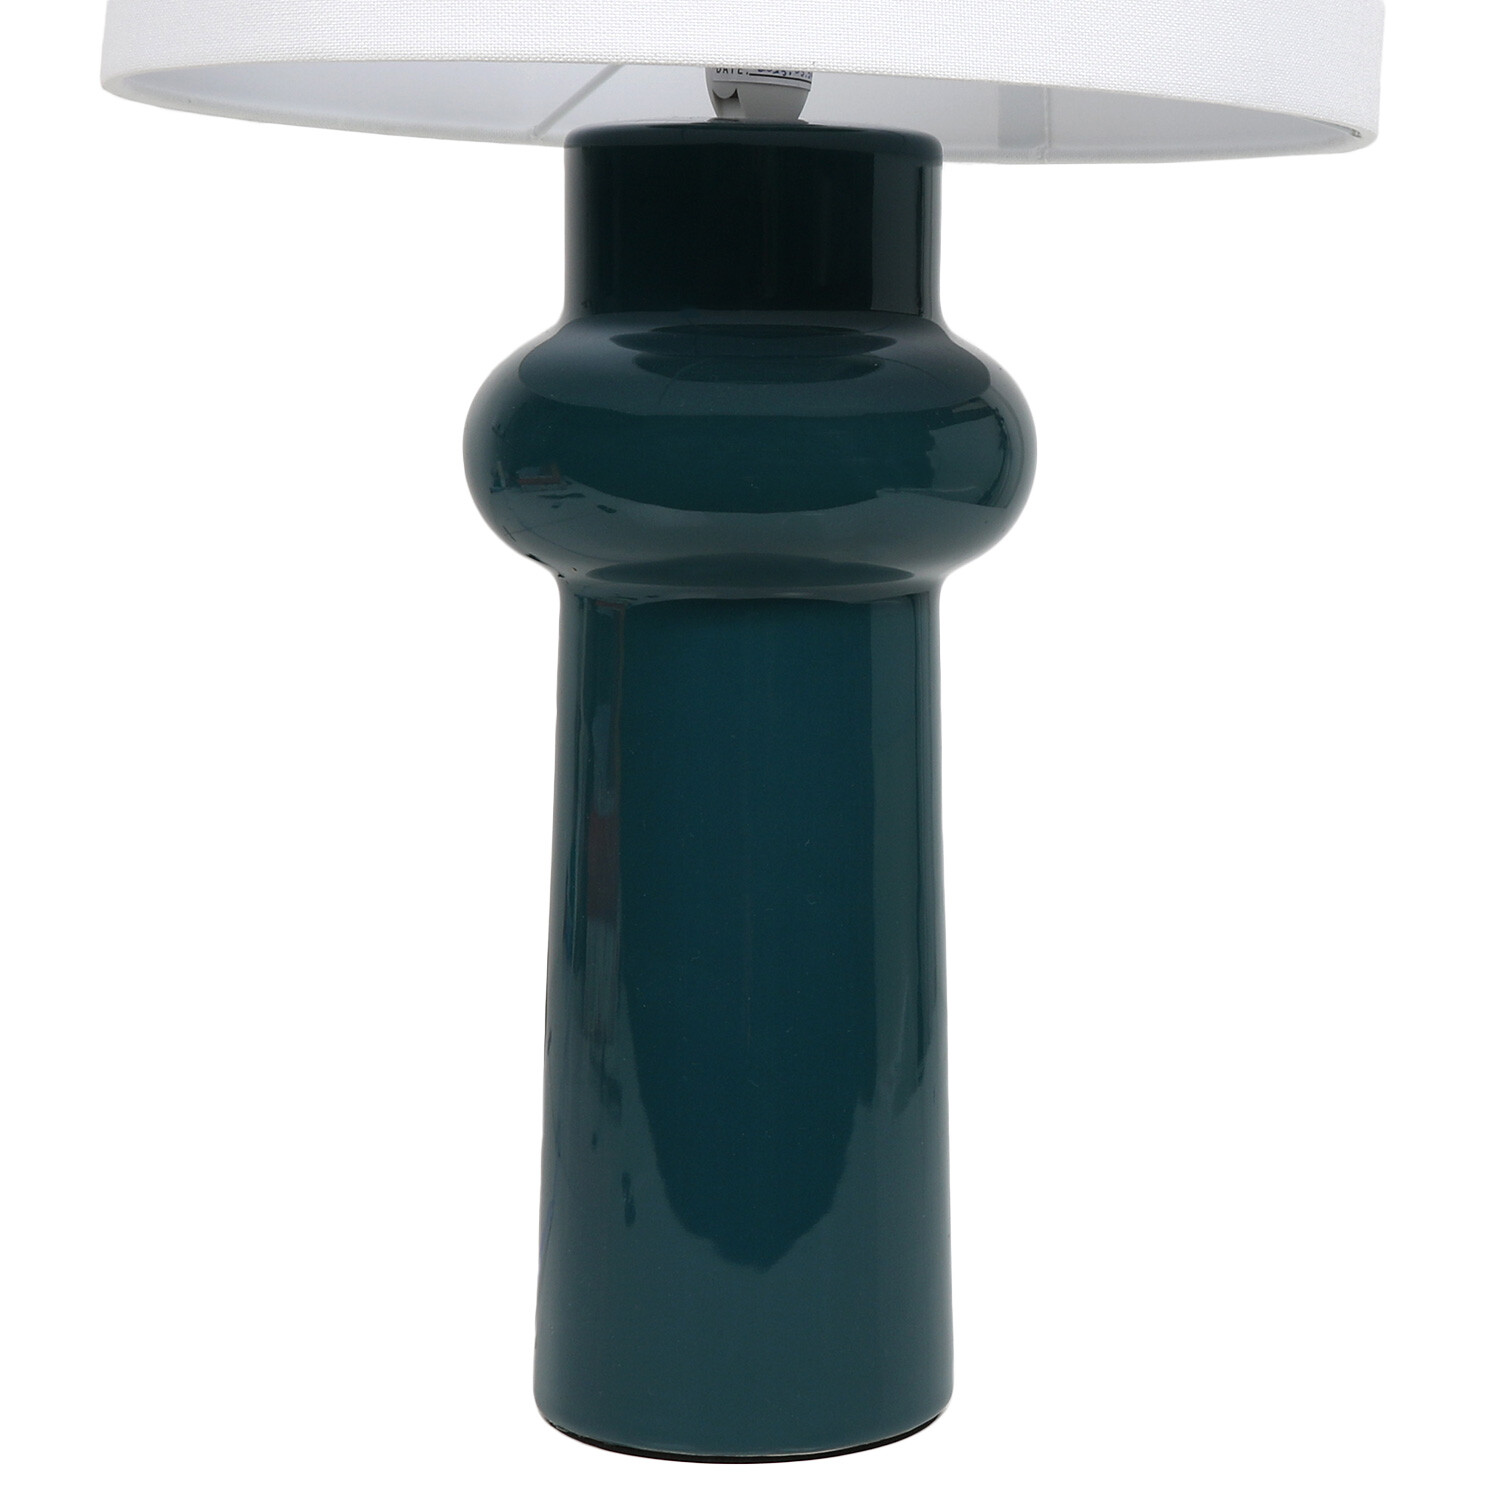 Atlantica Table Lamp - Teal Image 3